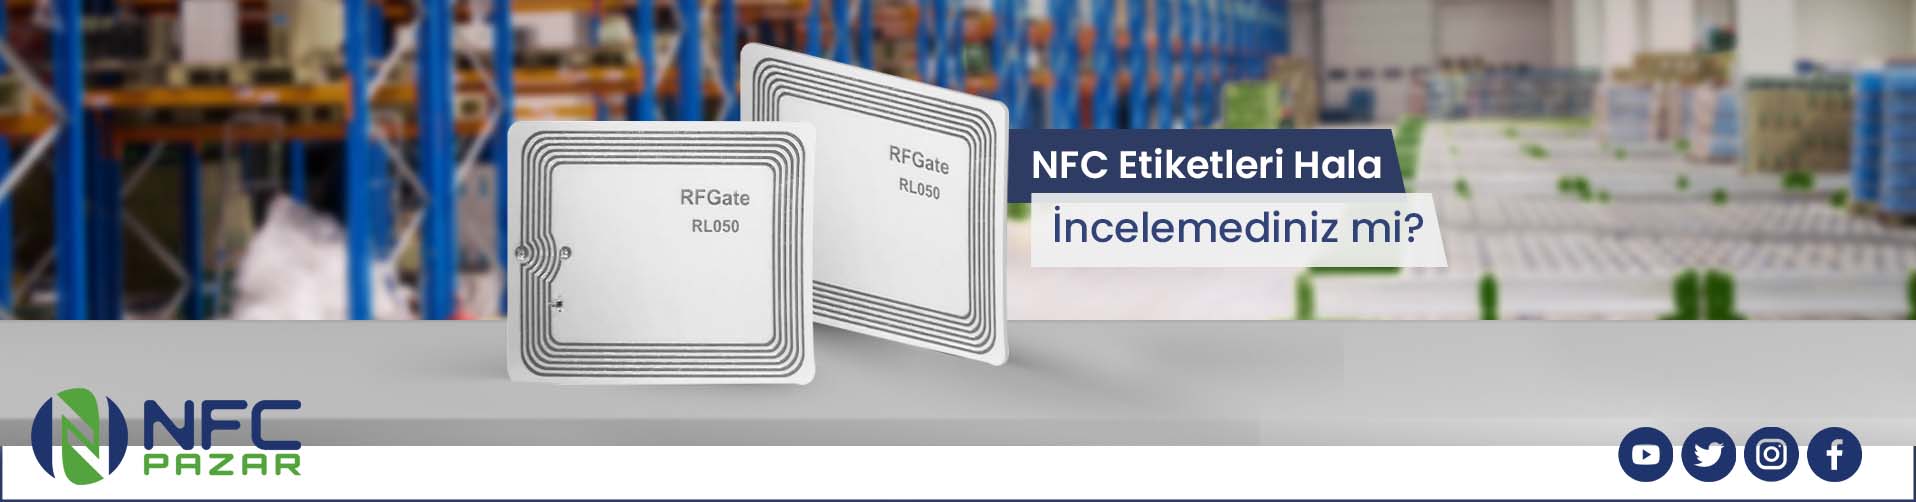 NFC Etiketler